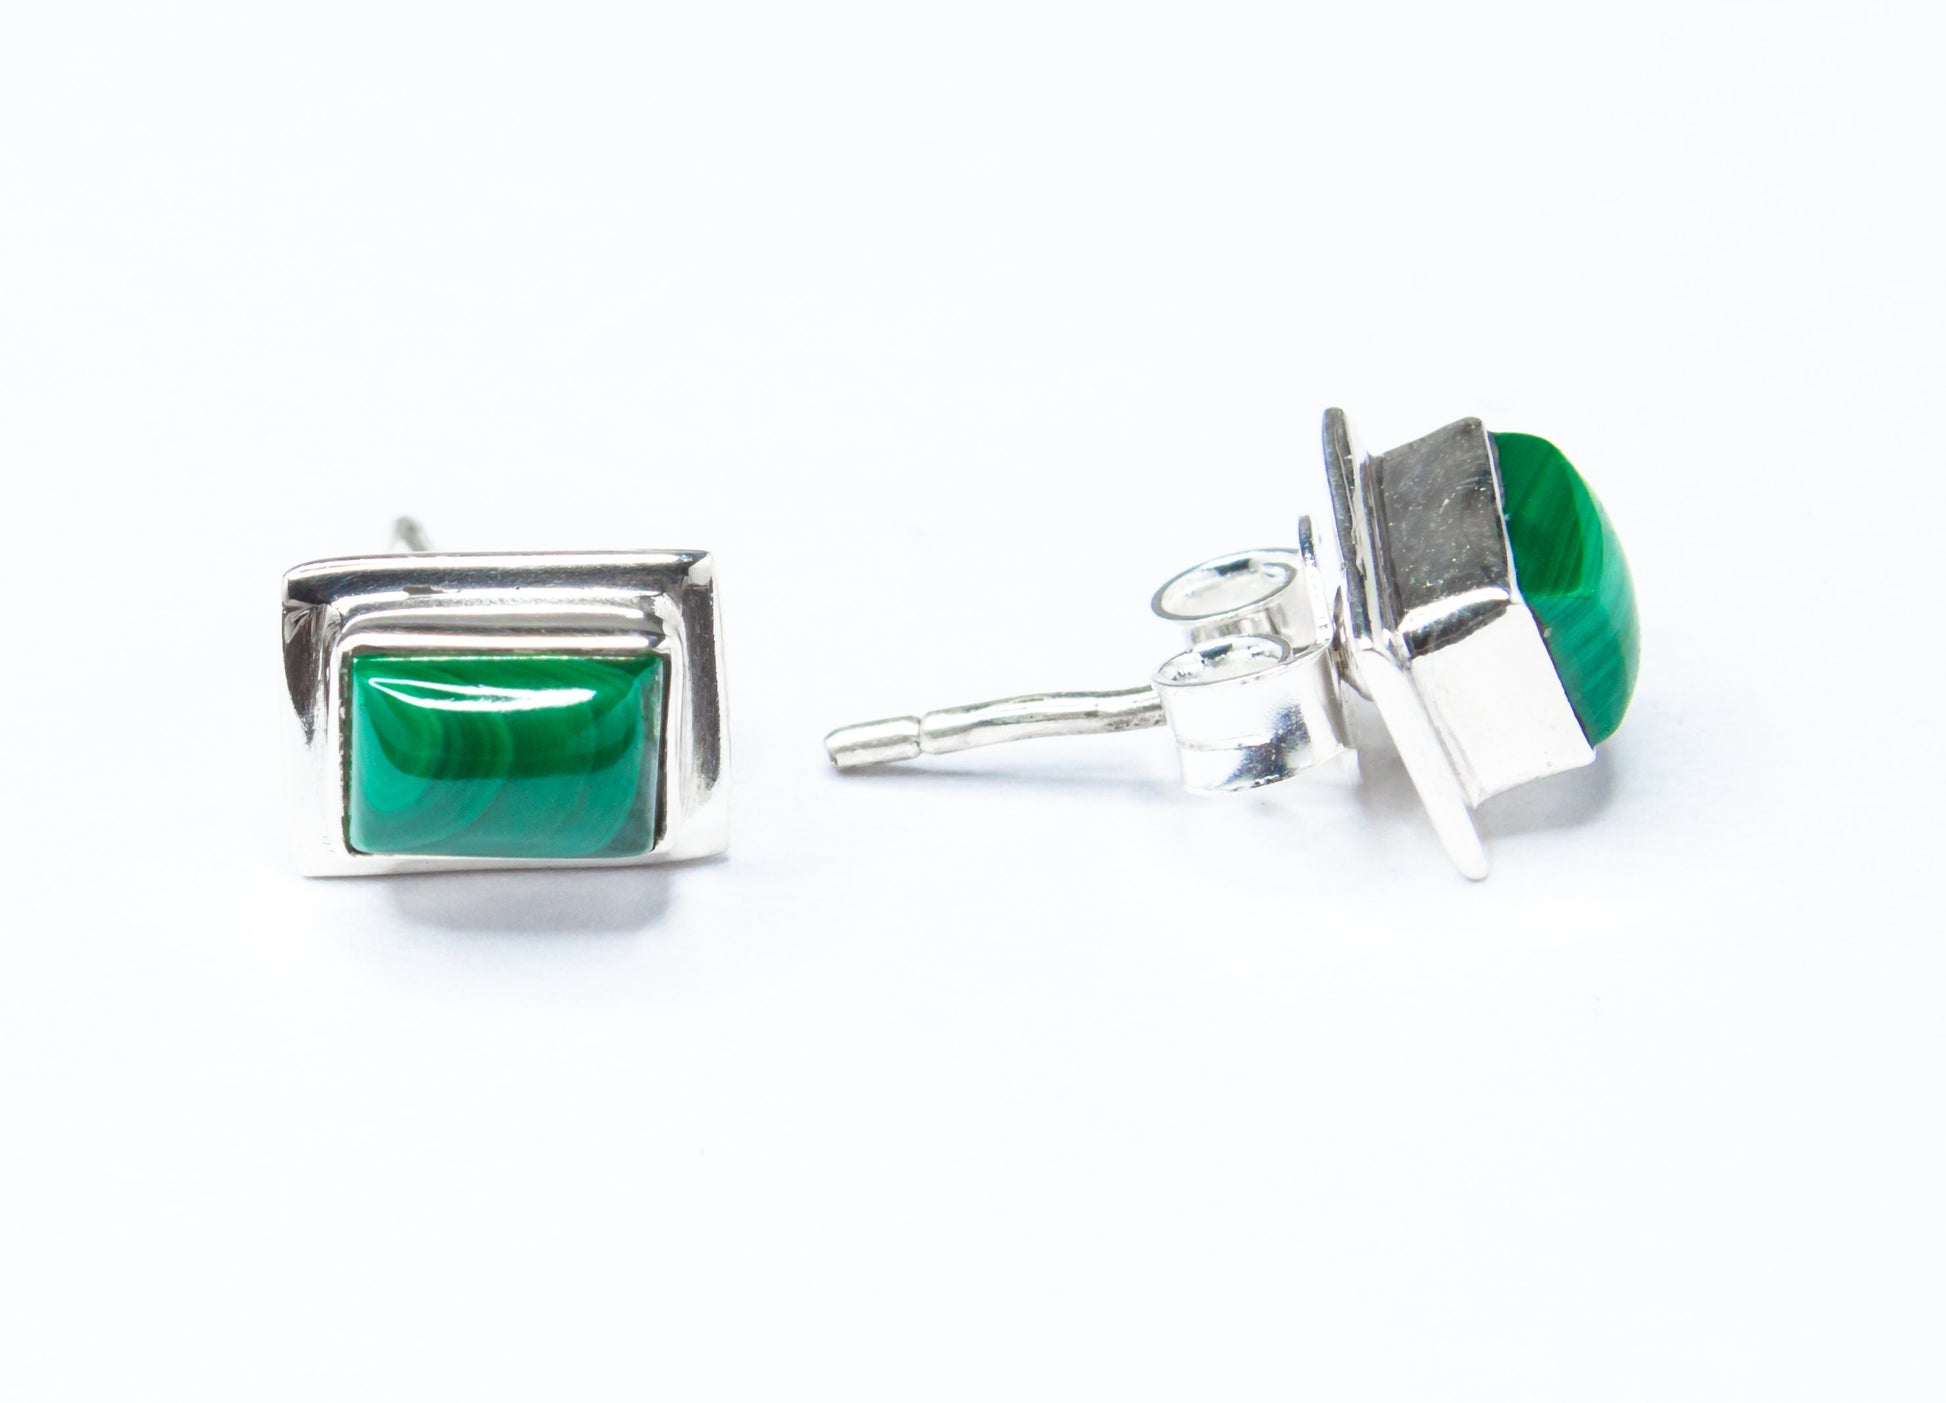 Green Malachite Stud Earrings, Minimalist Green Silver Earrings, 925 Silver, Rectangle Shaped Stud Earrings, Textured Green, Australia, Zorbajewellers